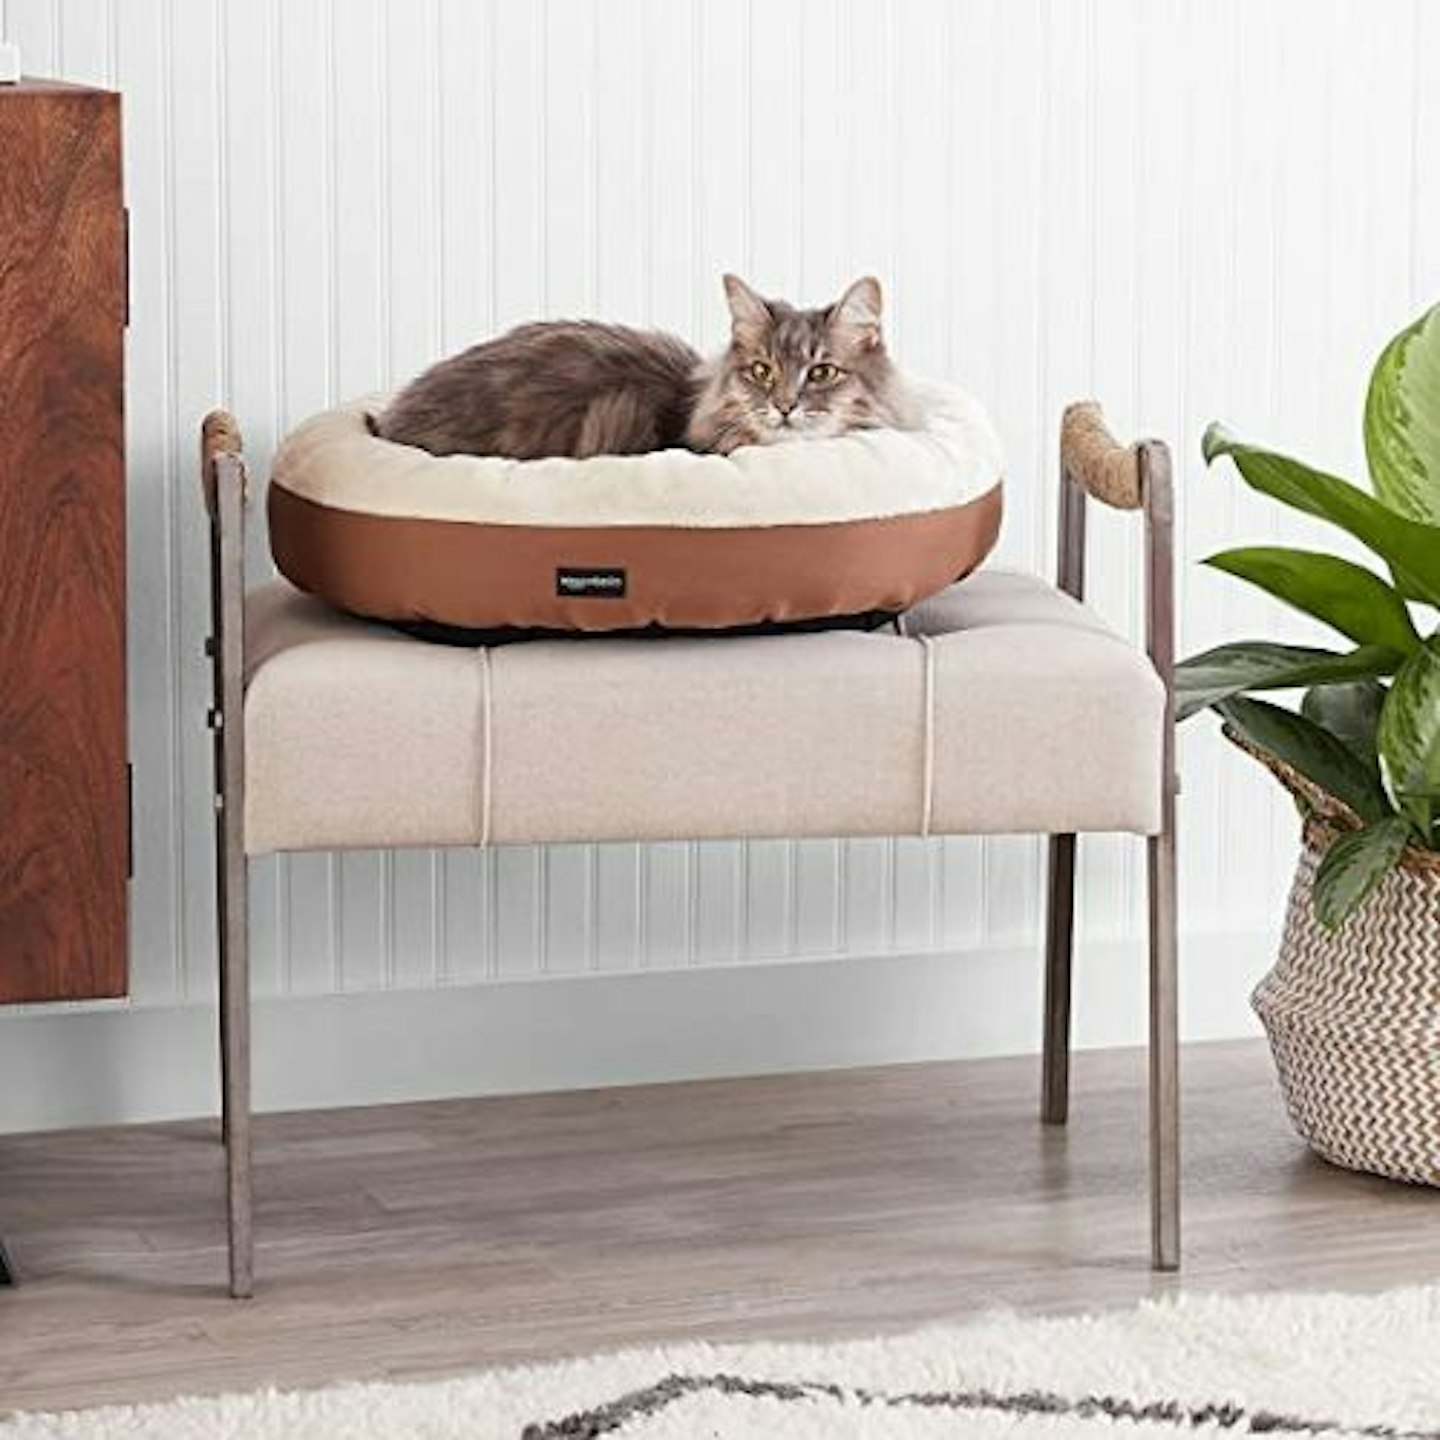 Amazon Basics Round Pet Bed